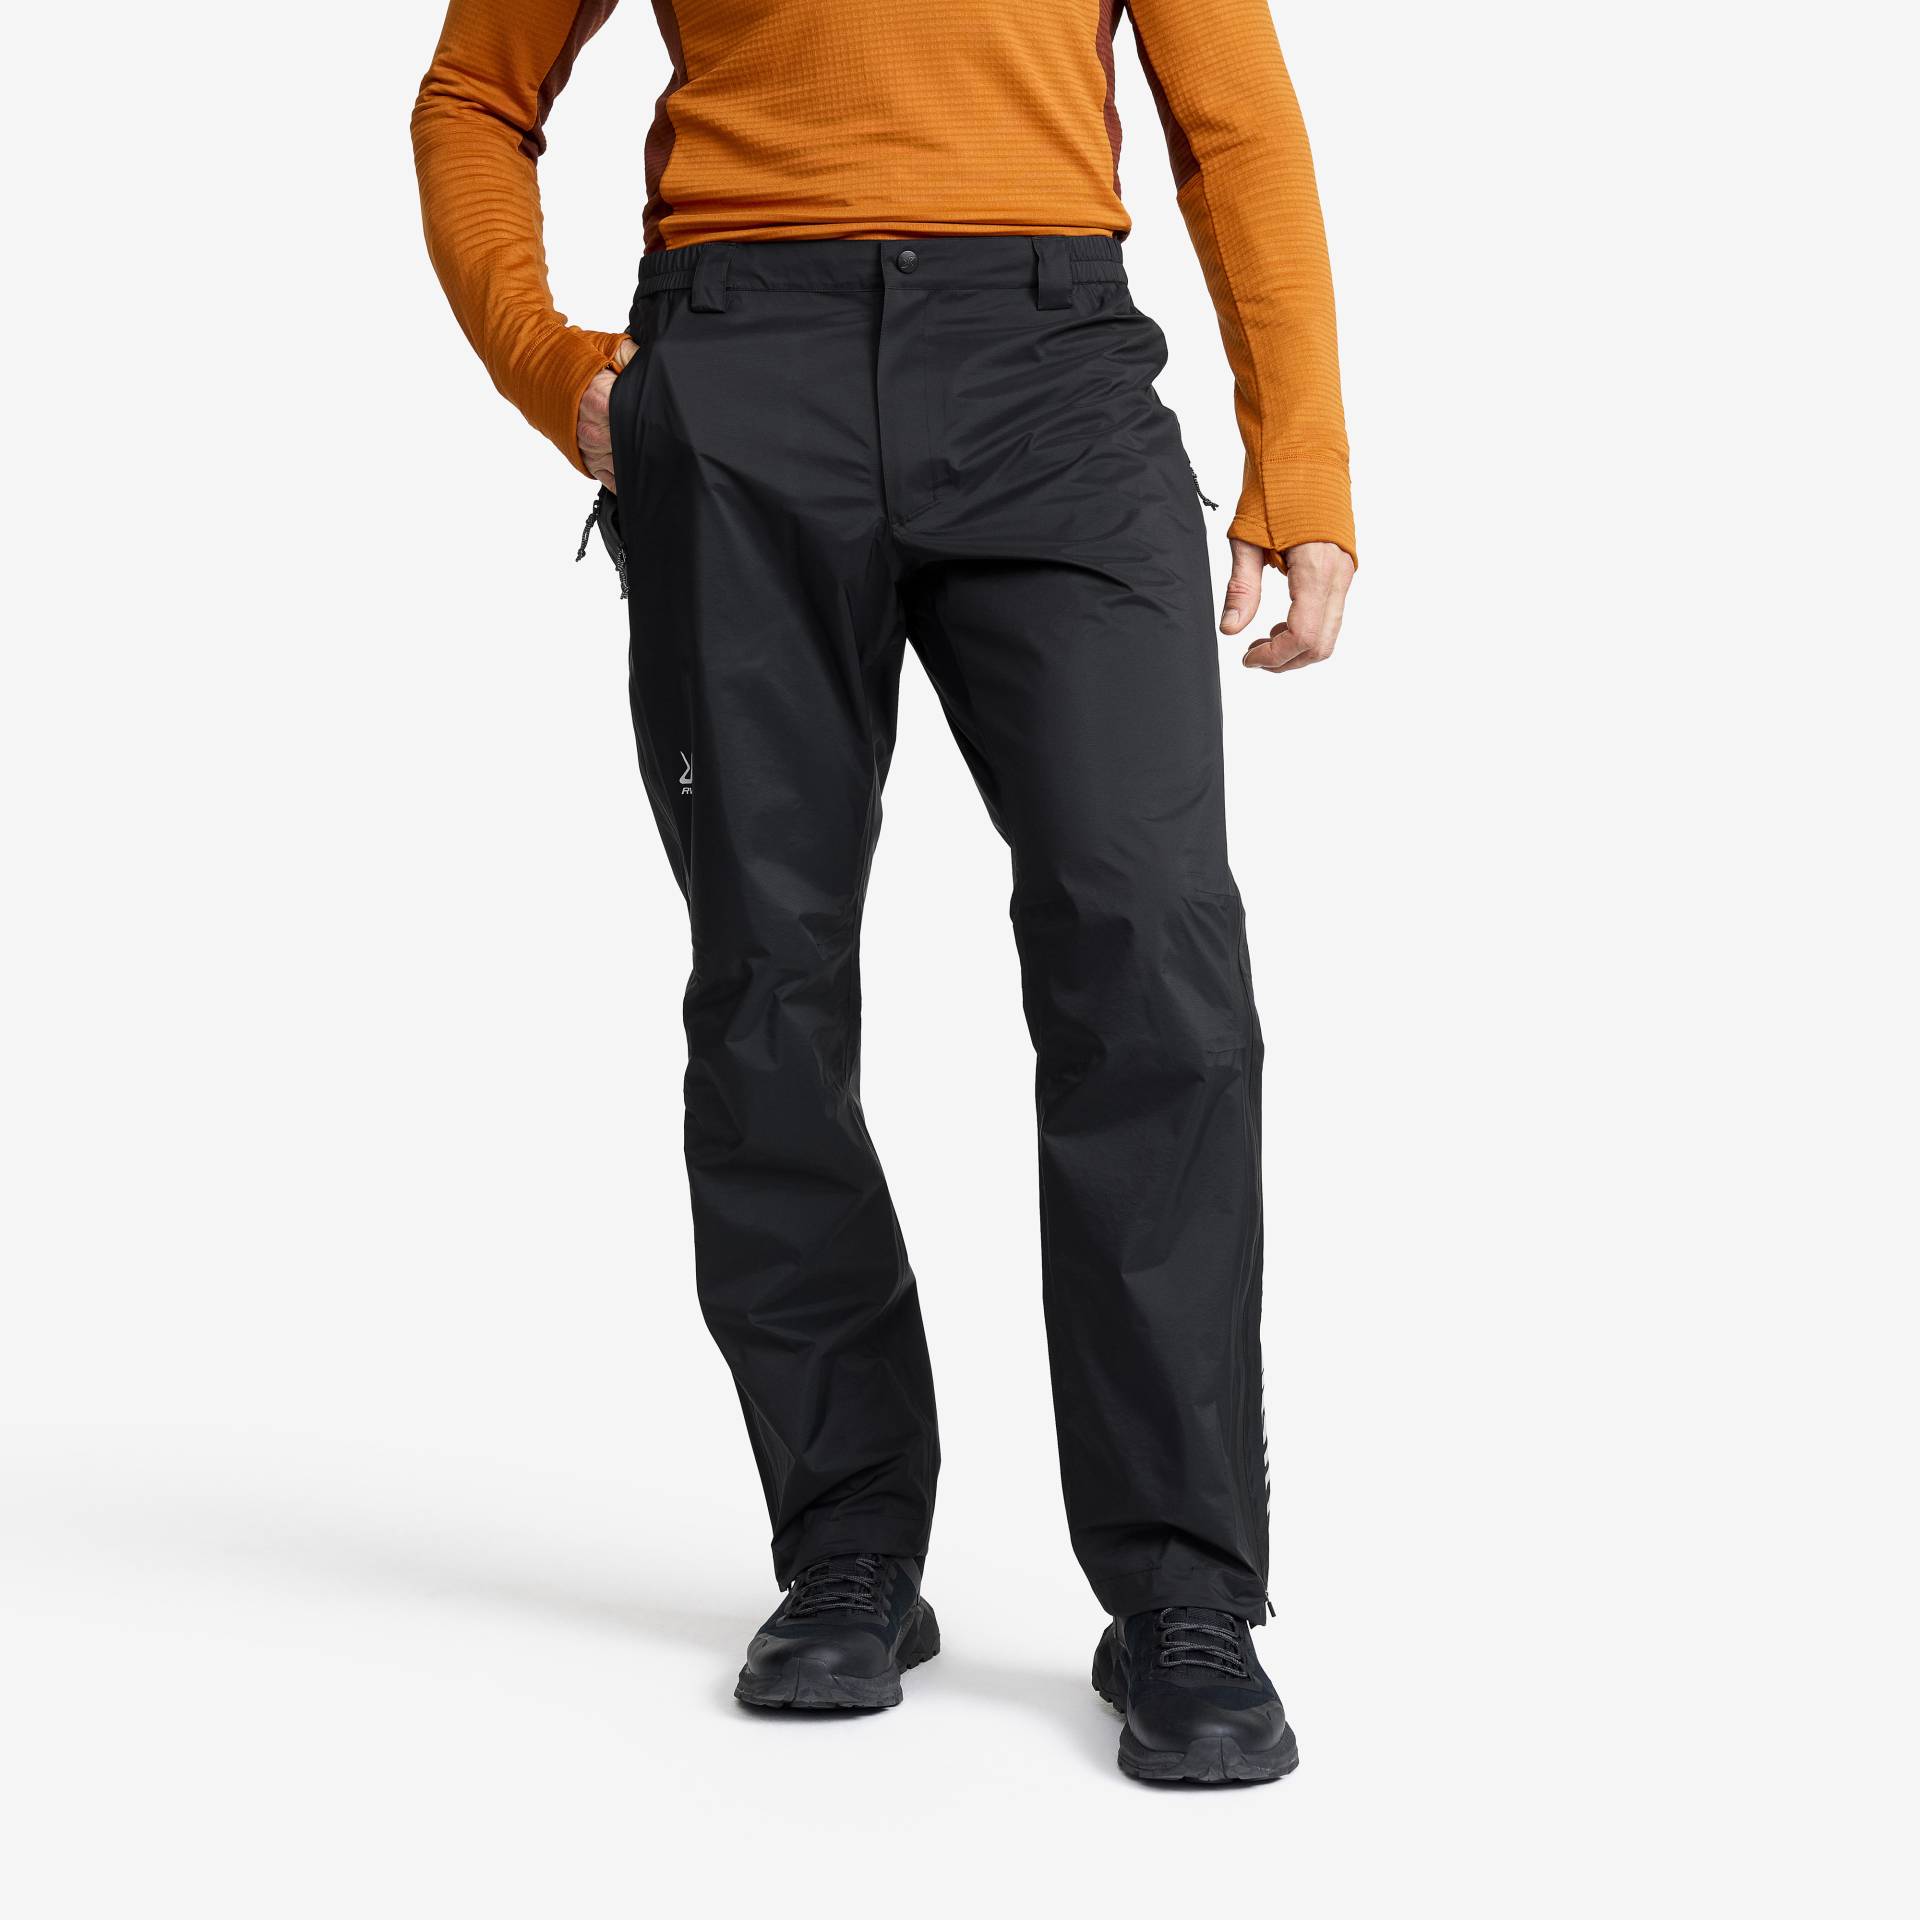 Arcade 3L Lightweight Pants Herren Black, Größe:XL - Outdoorhose, Wanderhose & Trekkinghose von RevolutionRace